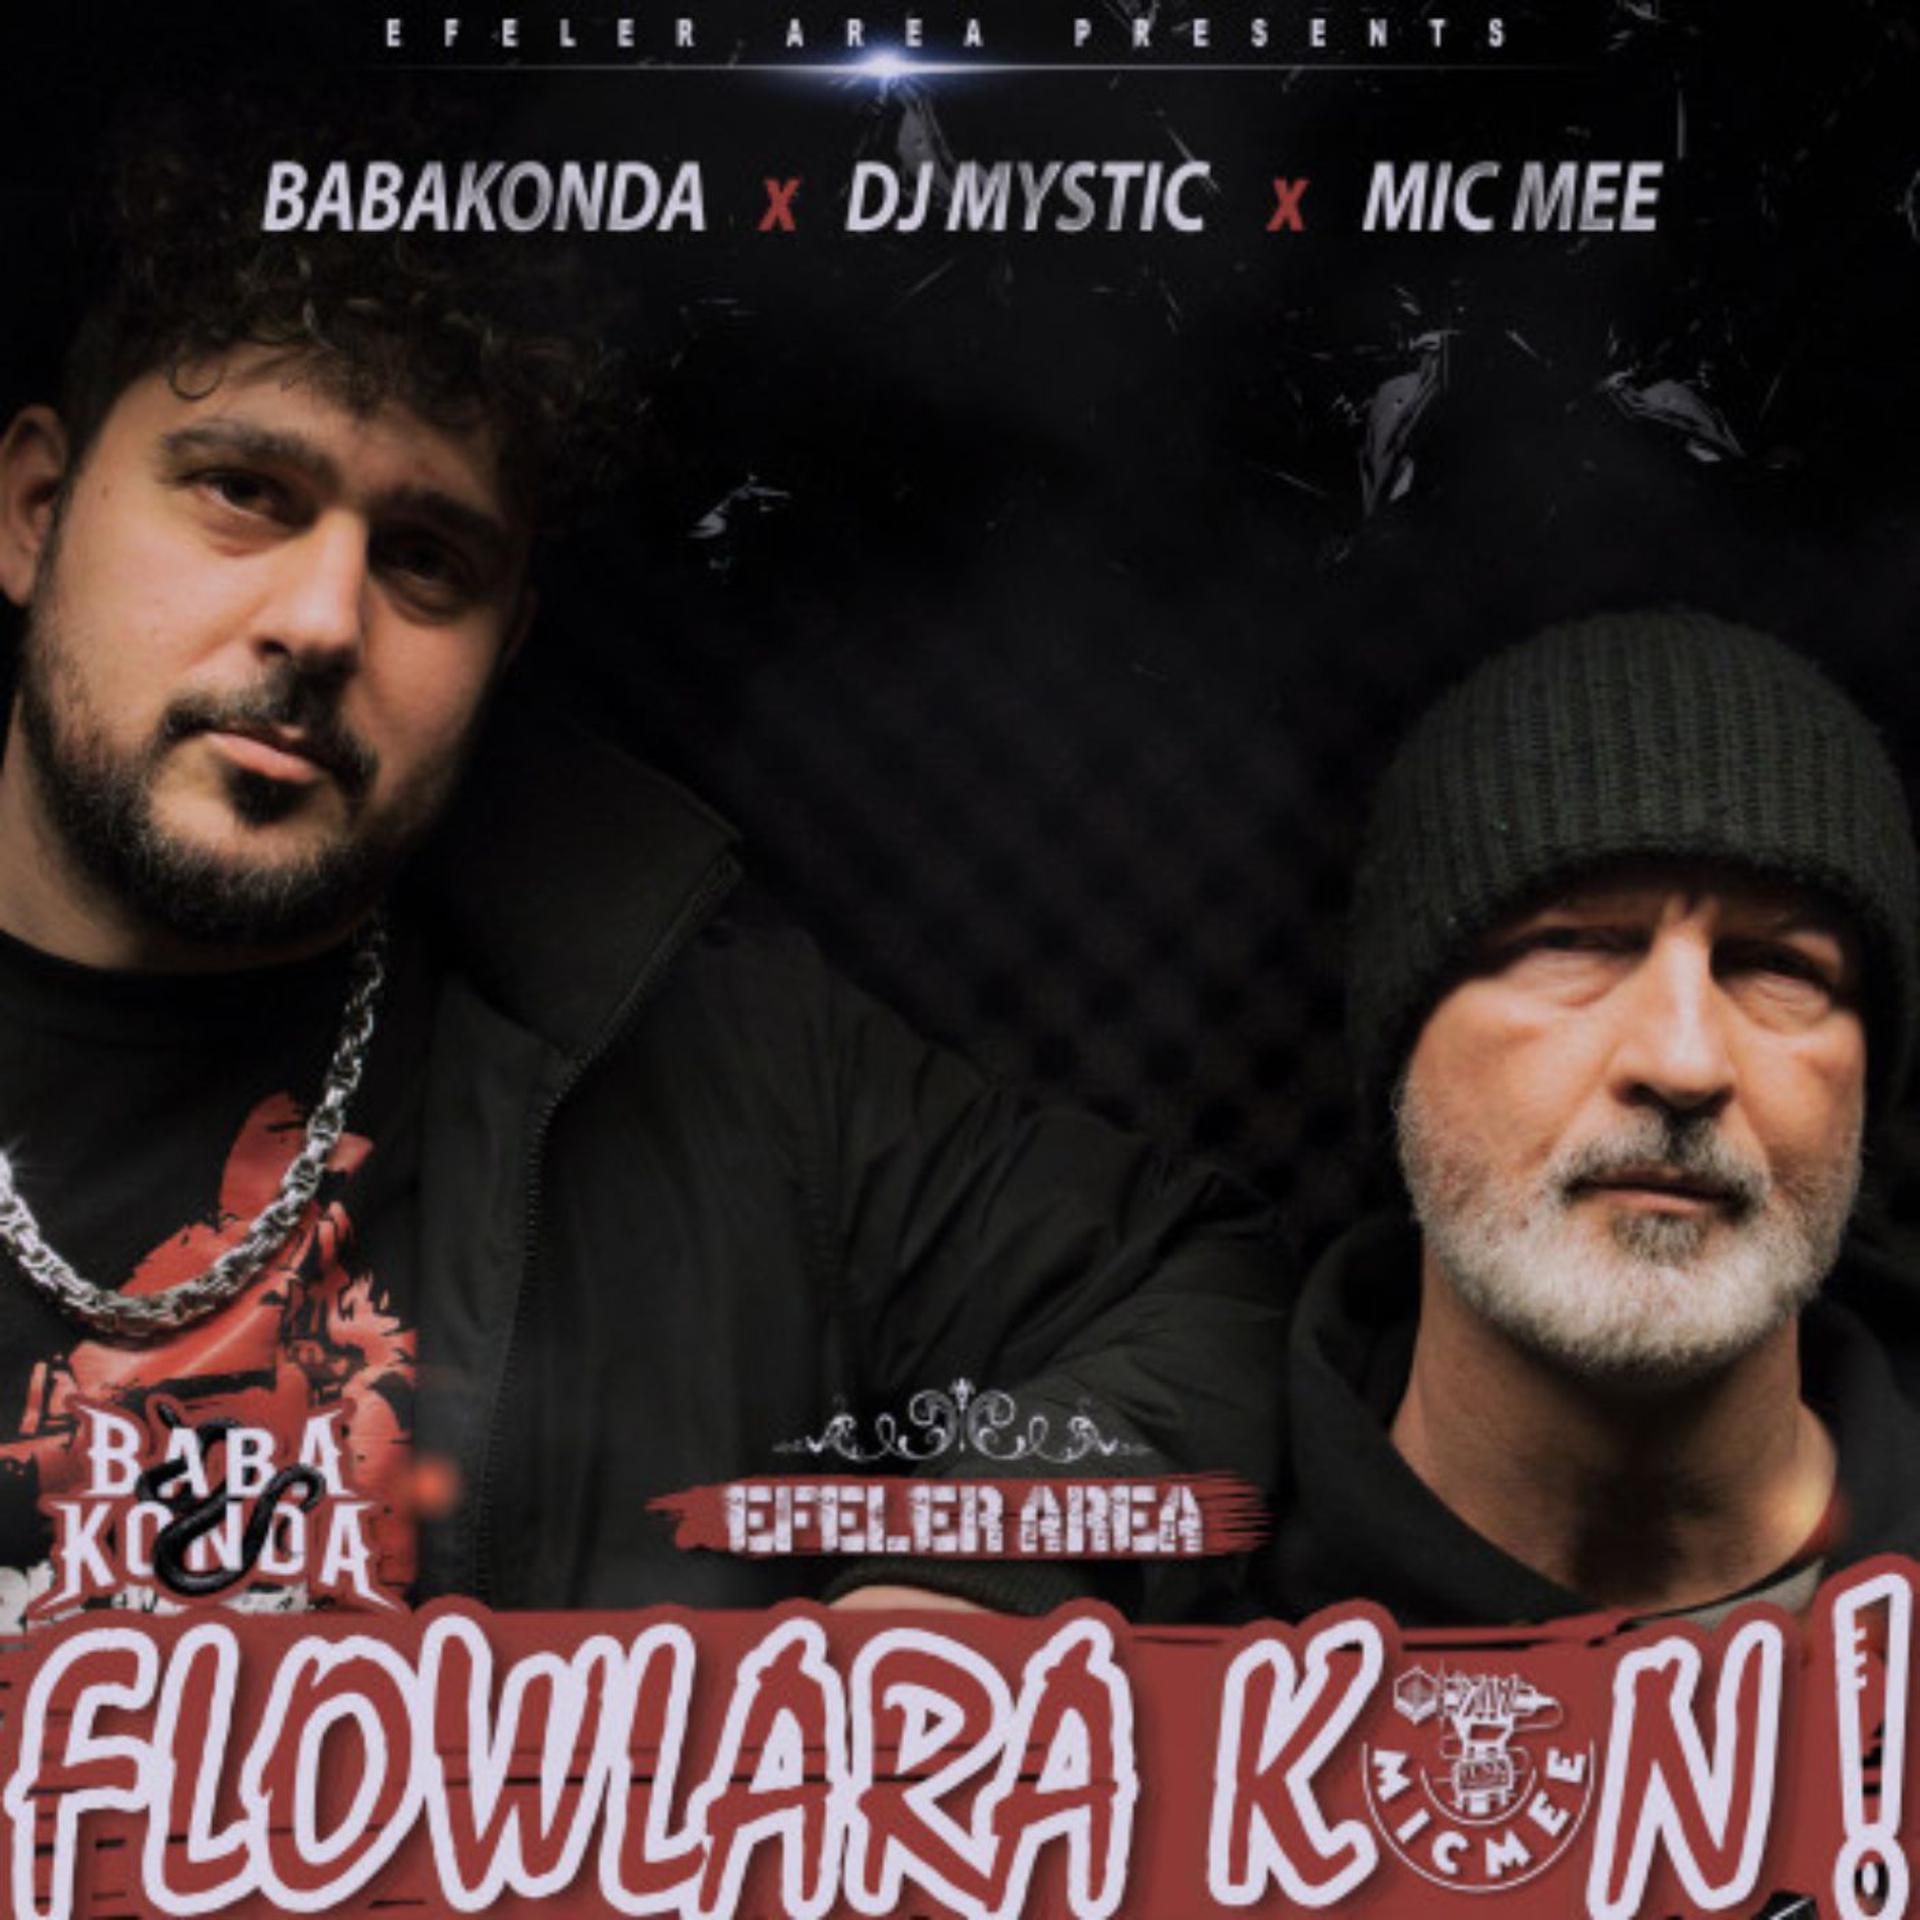 Постер альбома Flowlara kon